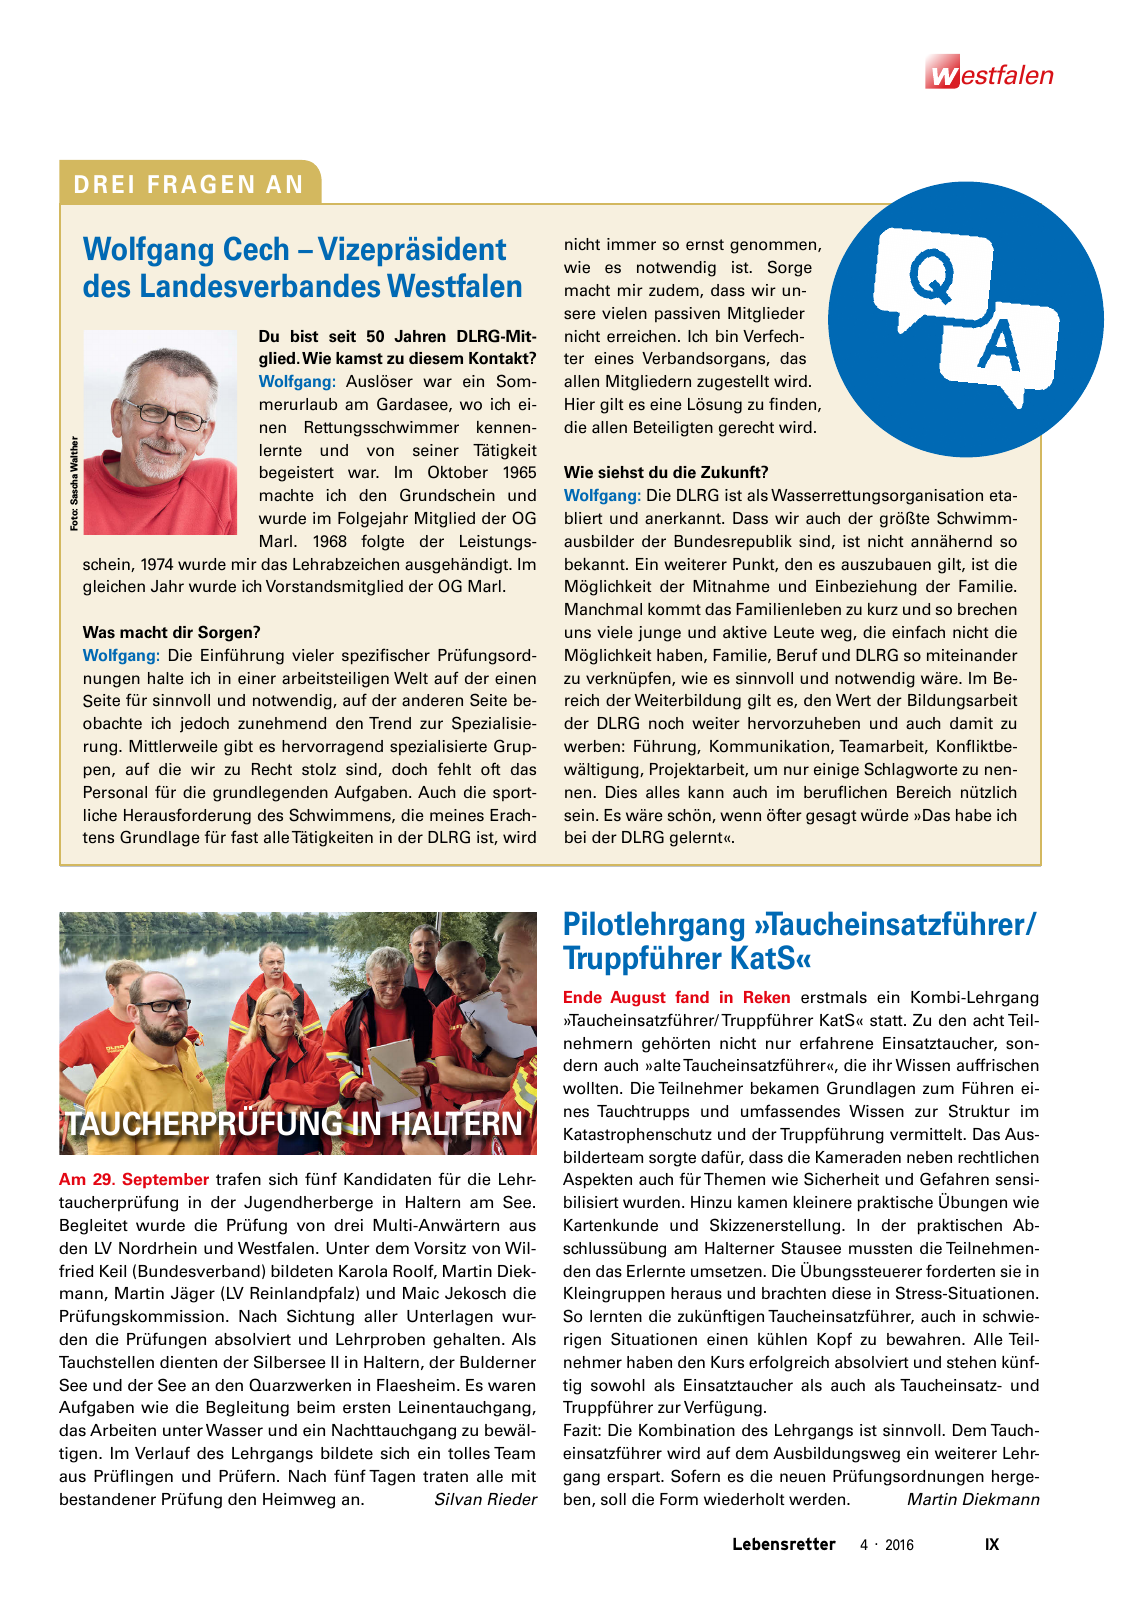 Vorschau Lebensretter 4/2016 - Regionalausgabe Westfalen Seite 11